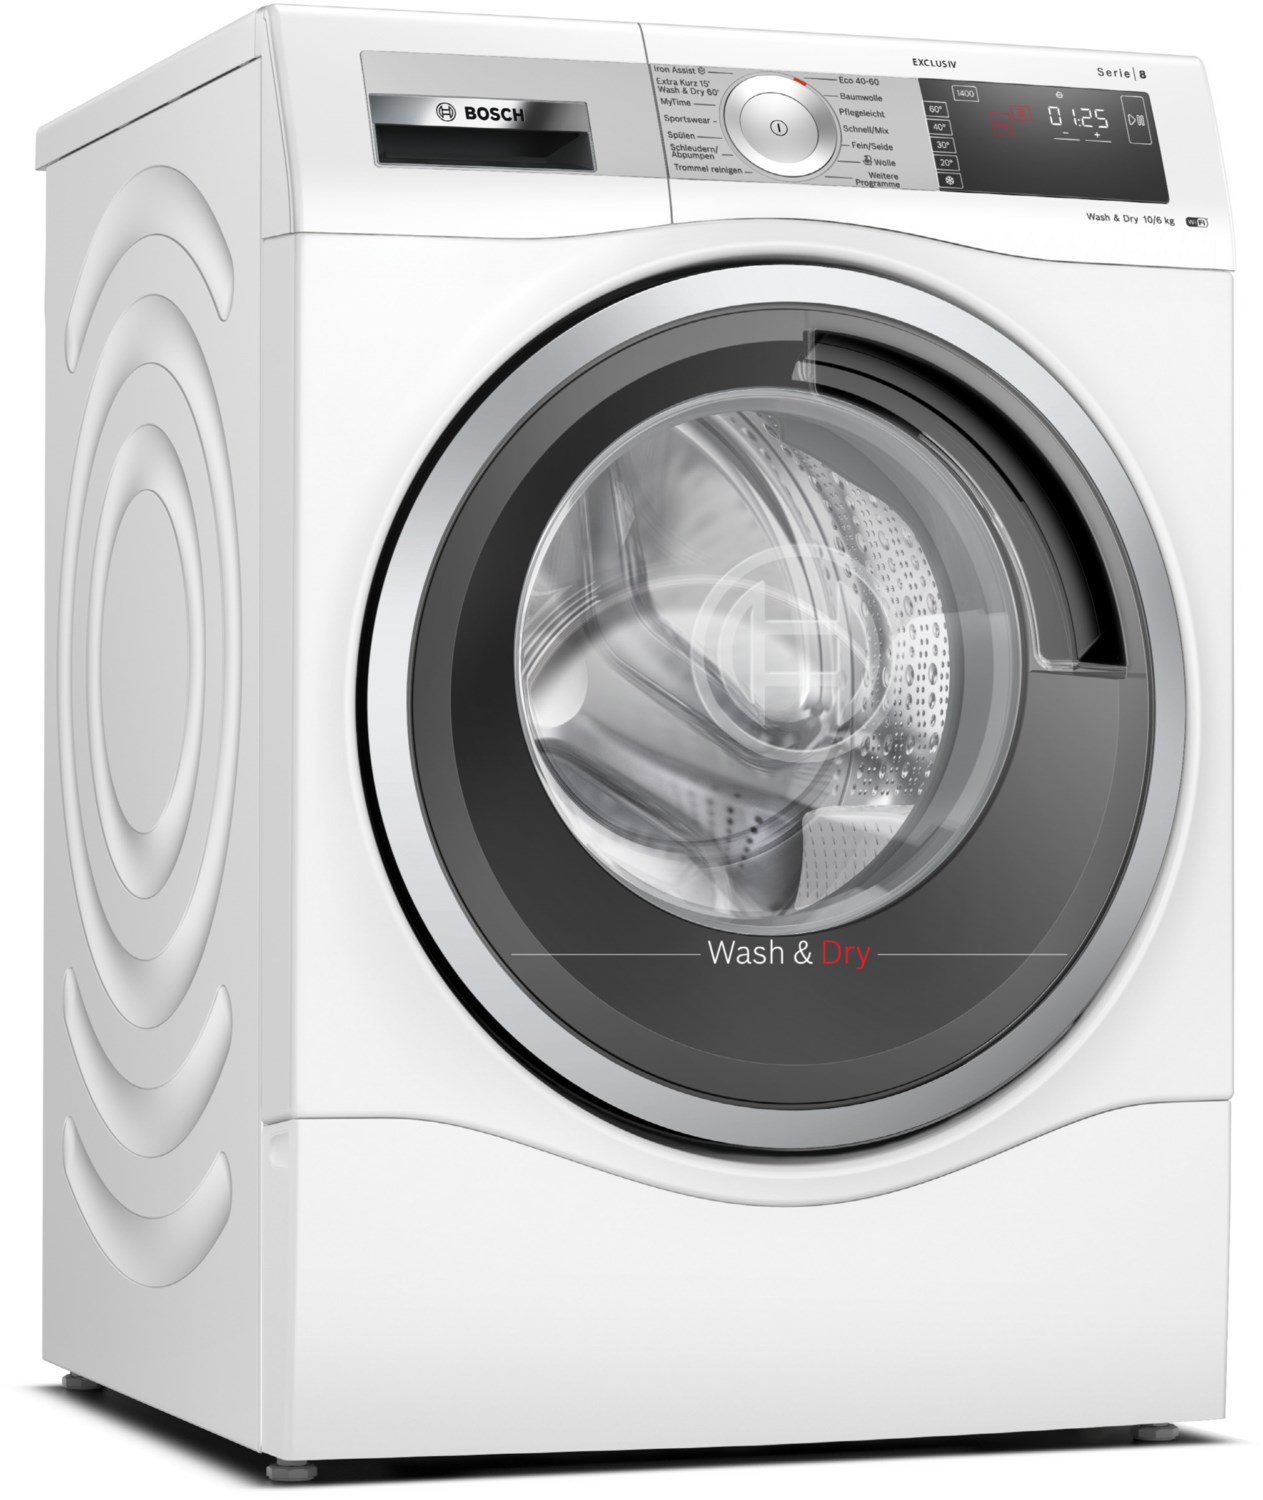 WDU28593 Stand-Waschtrockner weiß